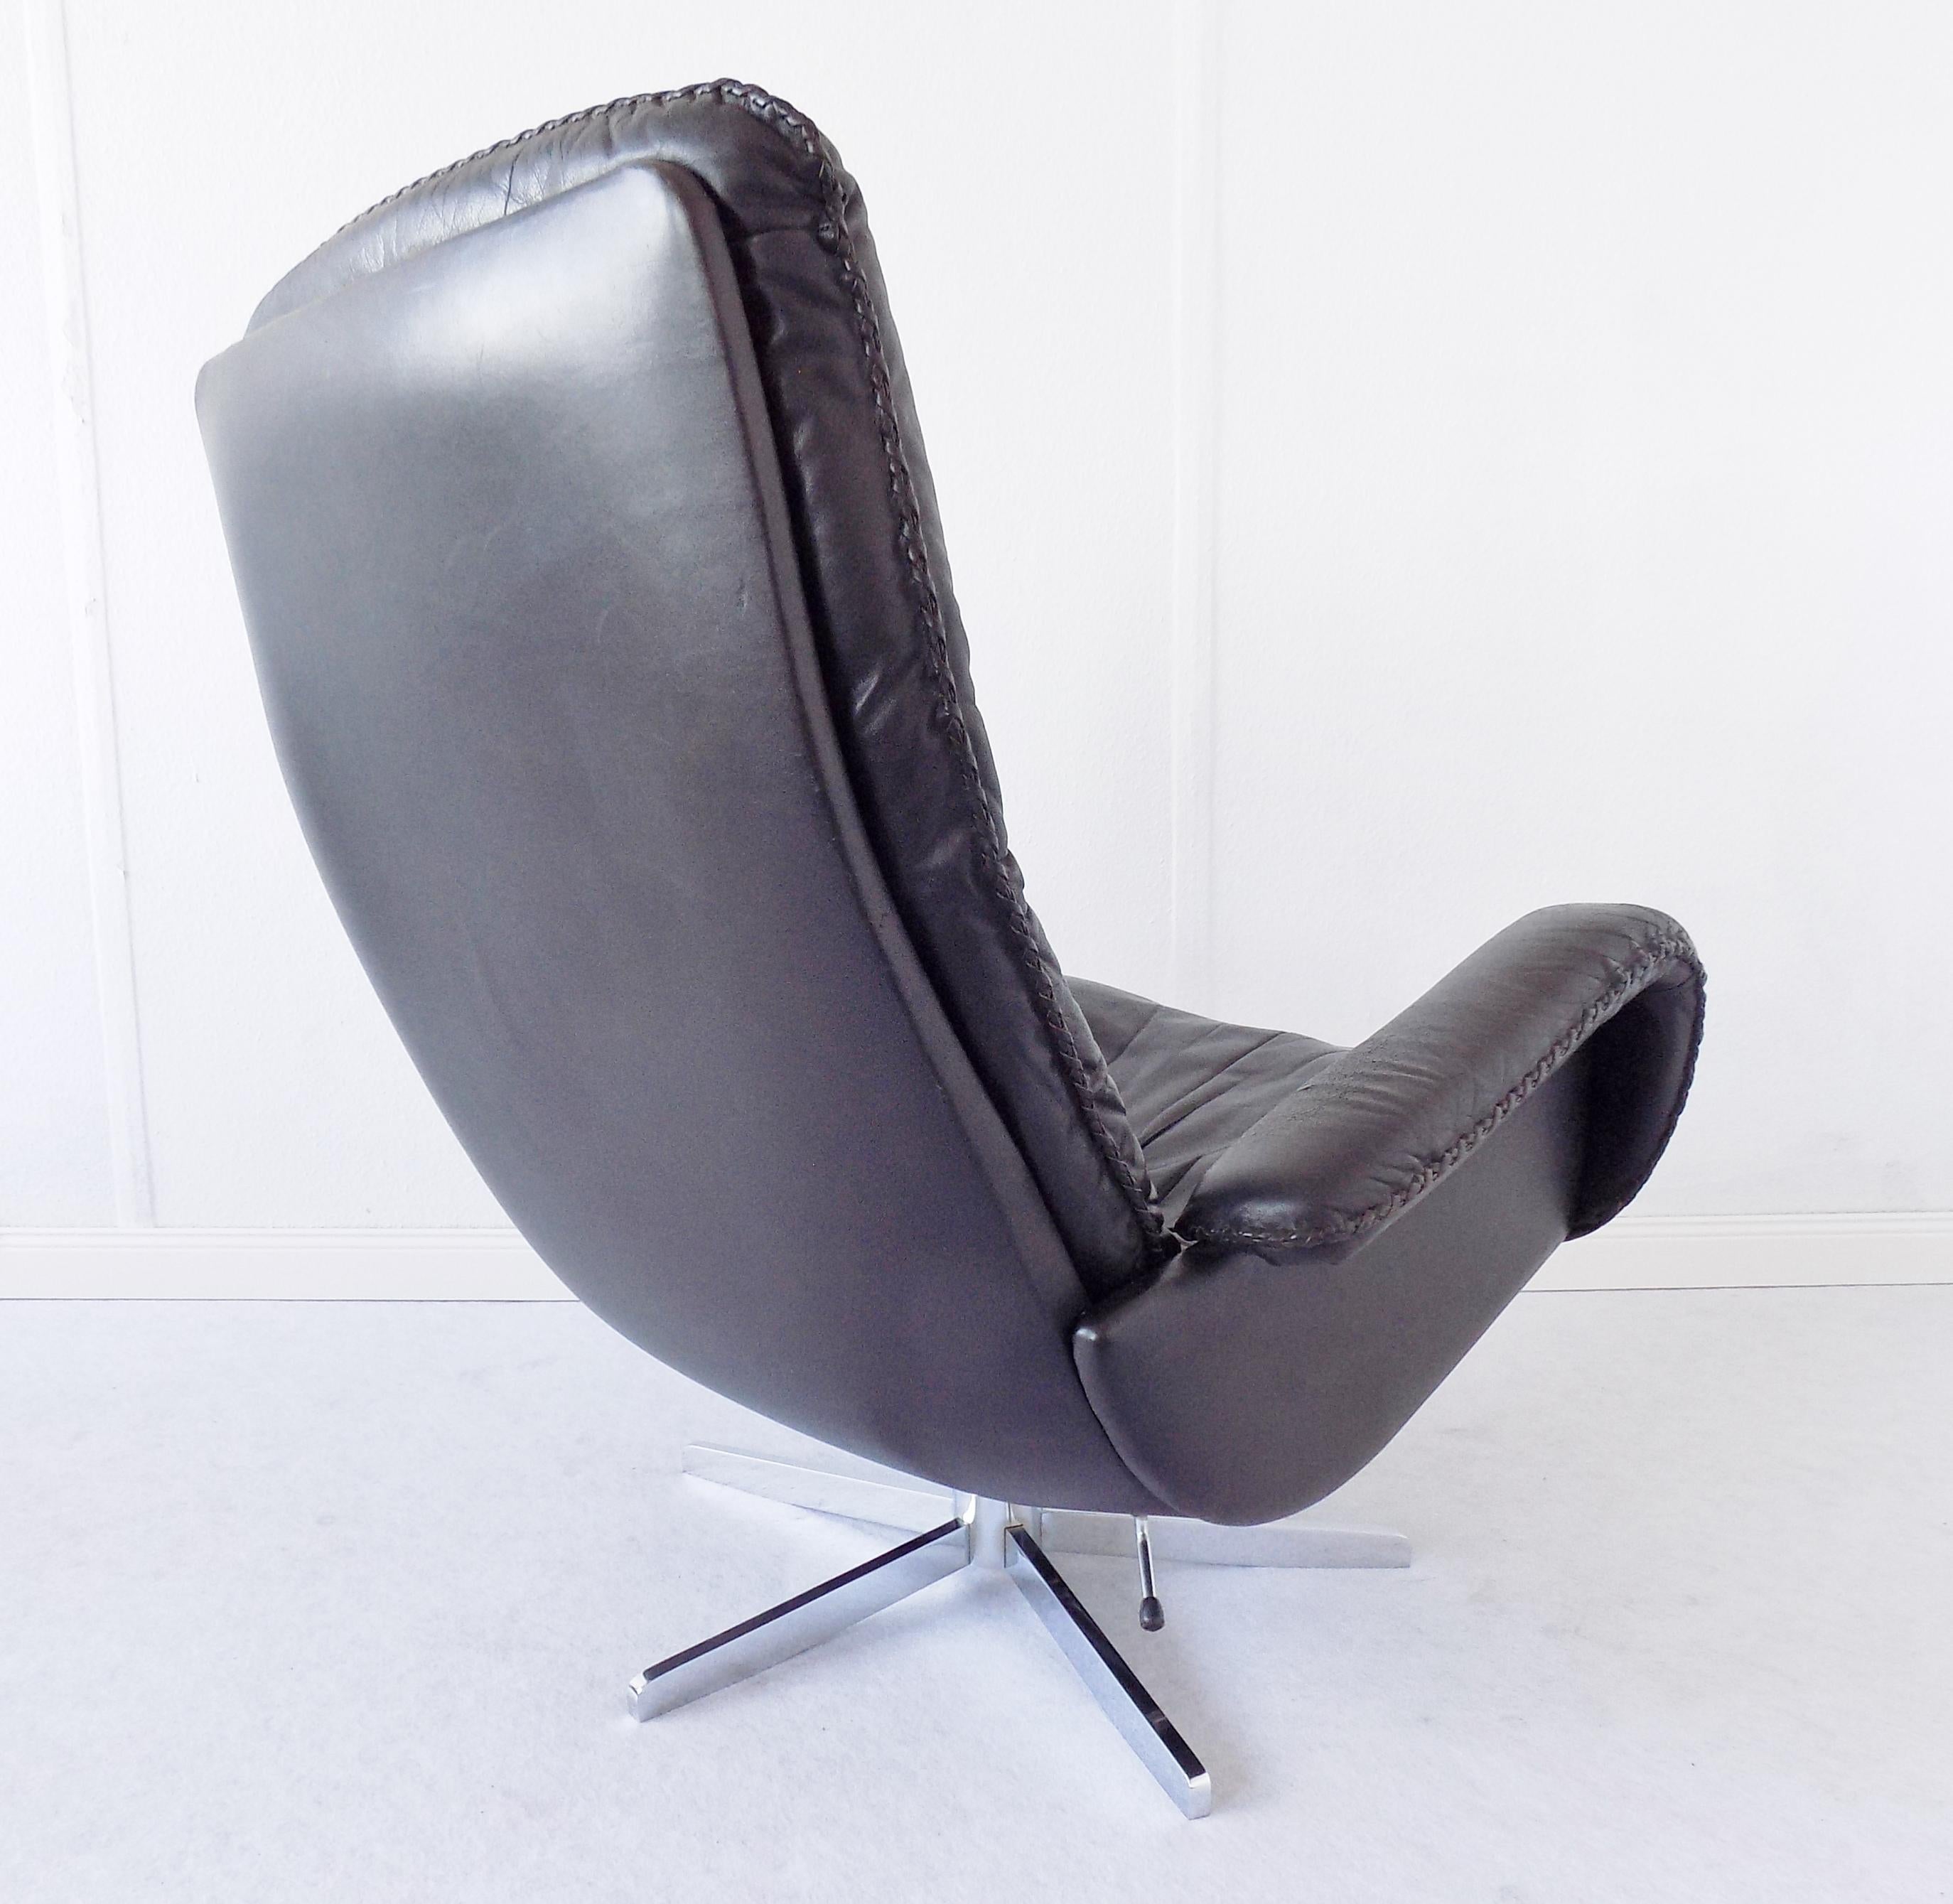 Mid-20th Century De Sede S 231 The James Bond Chair Black Leather